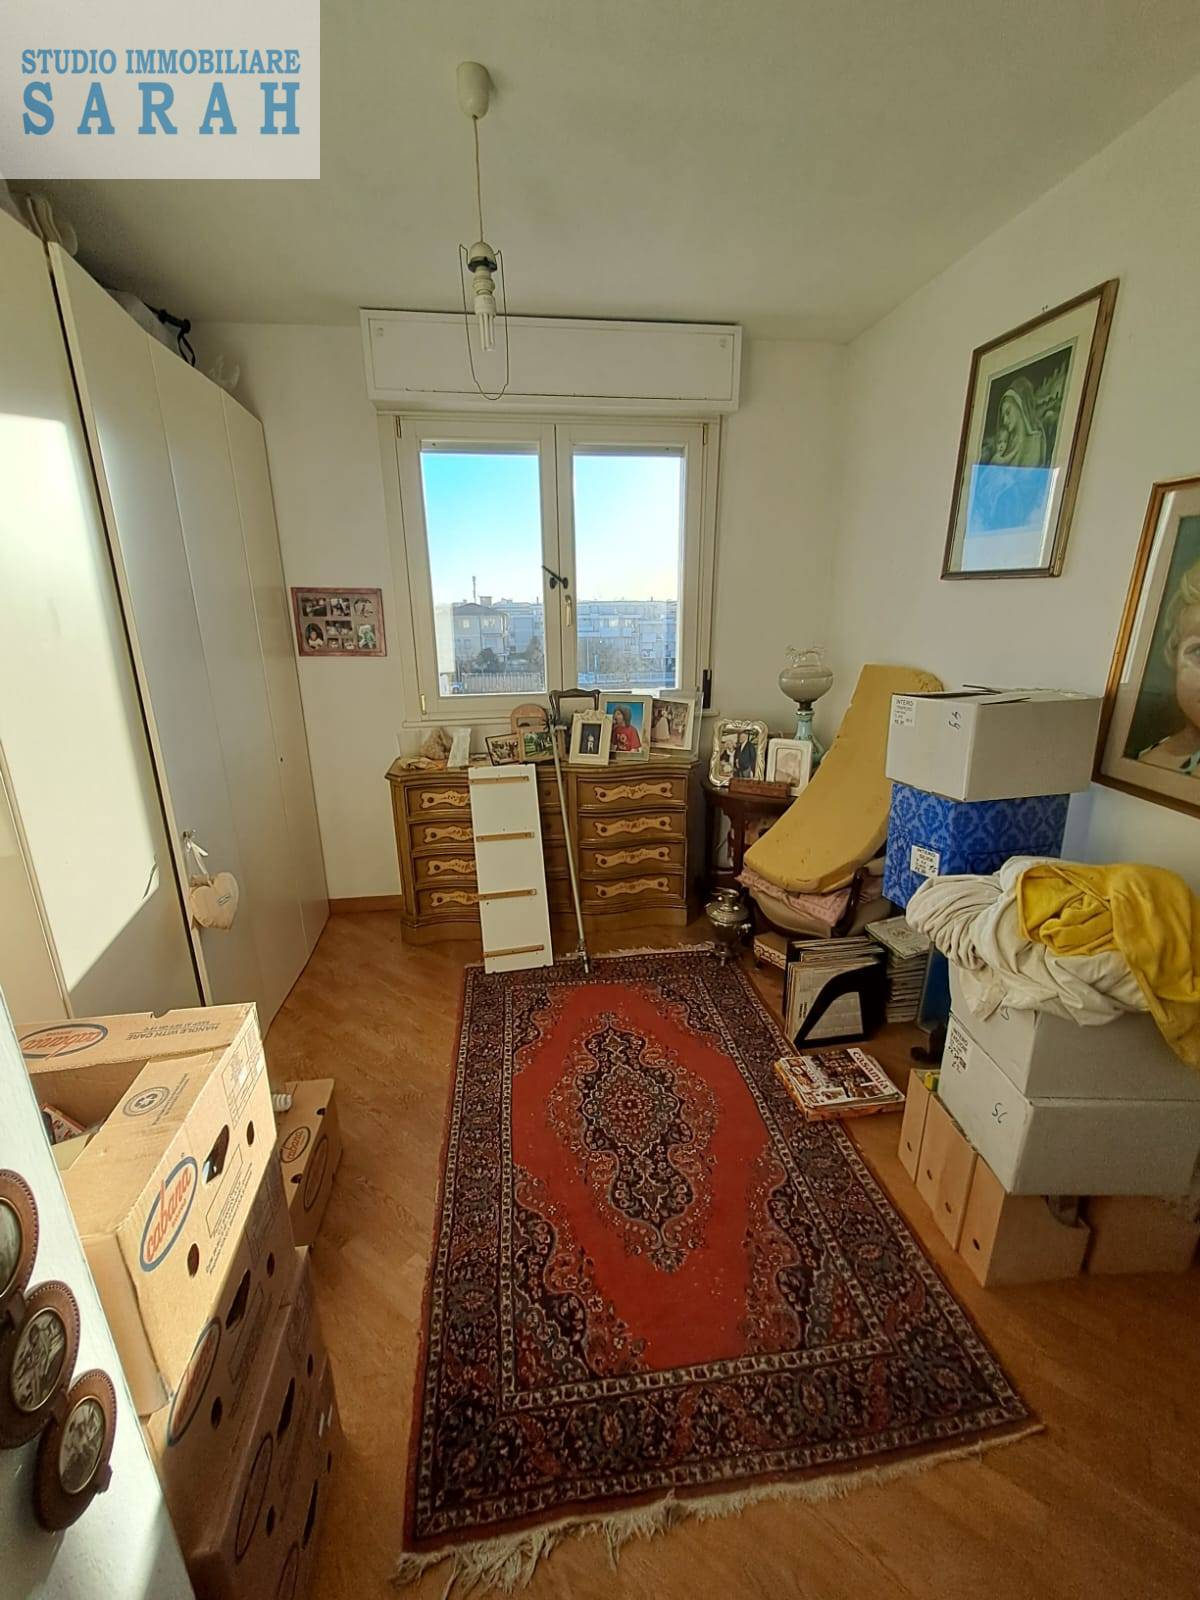 Appartamento con terrazzo, Viareggio migliarina,terminetto